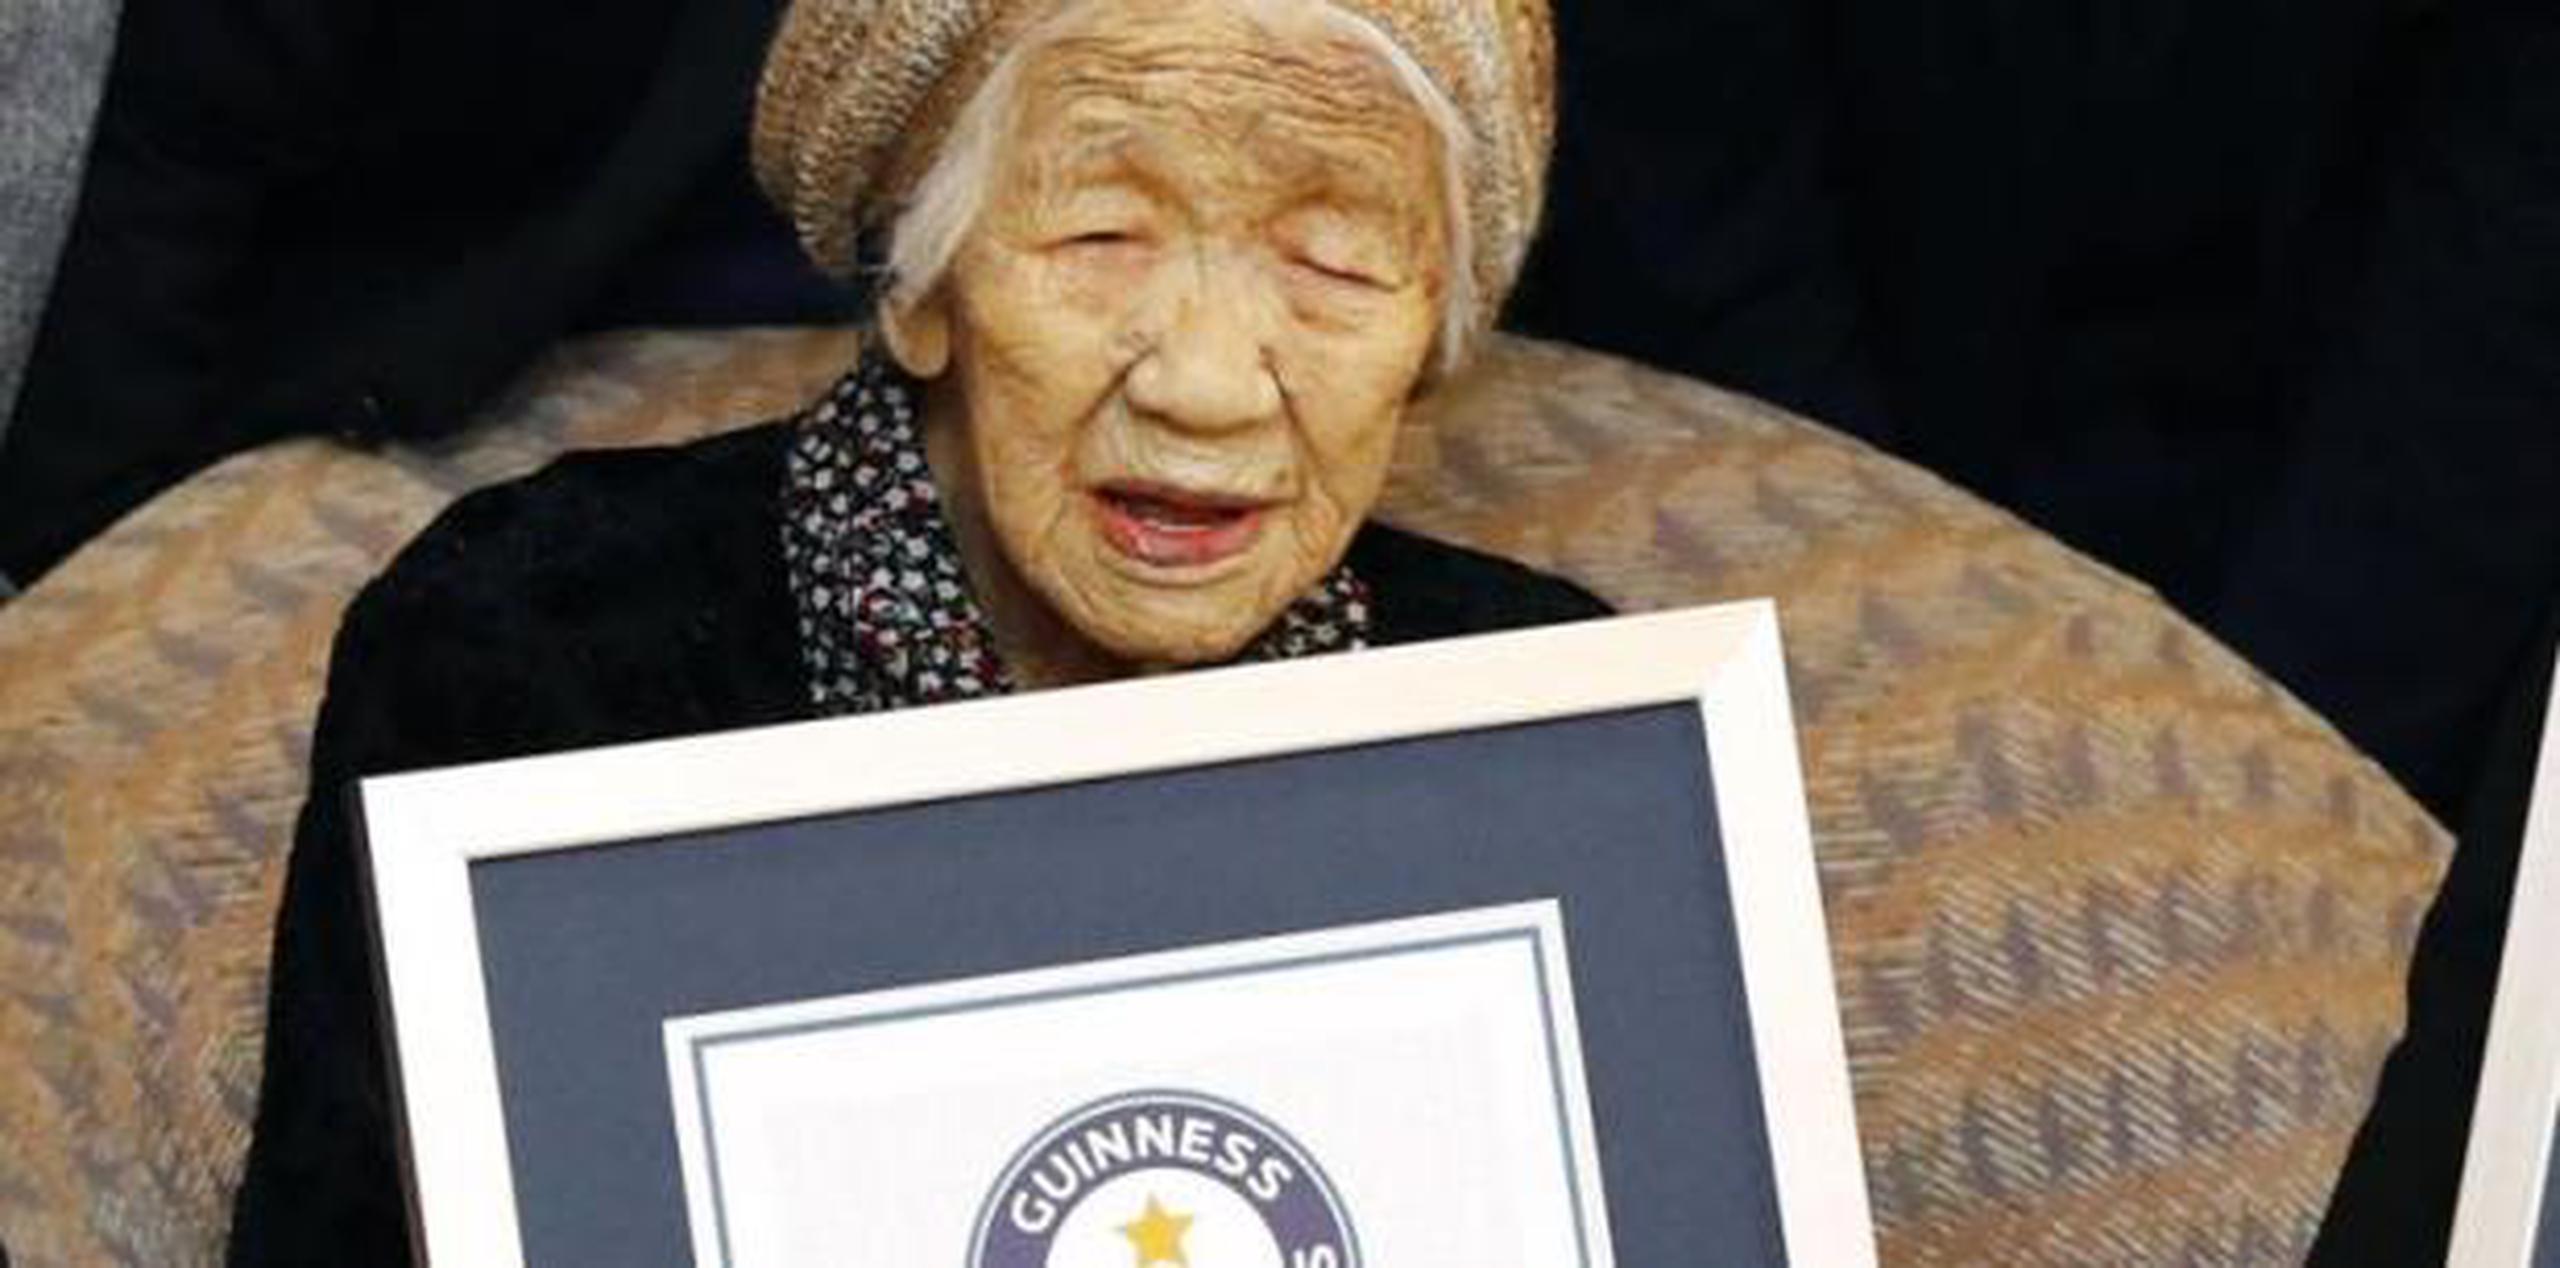 La anciana adora el juego de mesa Othello. (Takuto Kaneko/Kyodo News vía AP)